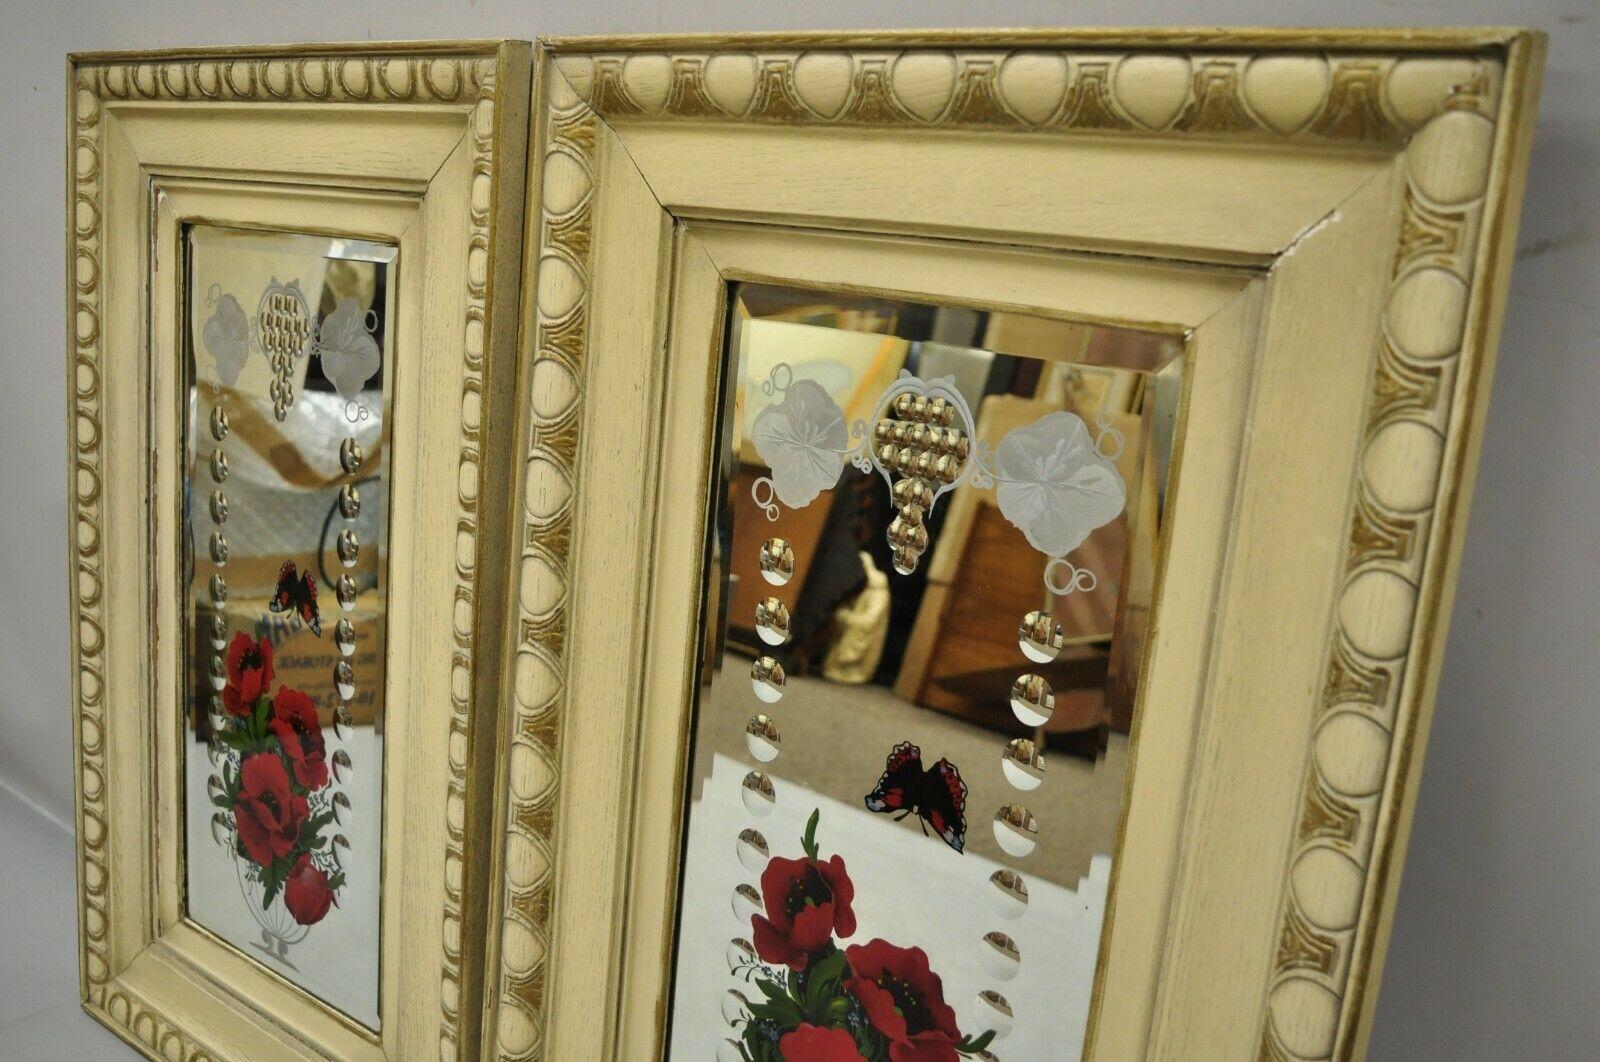 Miroir antique victorien en verre bulle, cadre en bois de chêne, fleur papillon - une paire. L'article comporte des fleurs et des papillons peints en rouge, des cadres en bois de chêne, une légère variation dans la finition peinte entre les cadres.